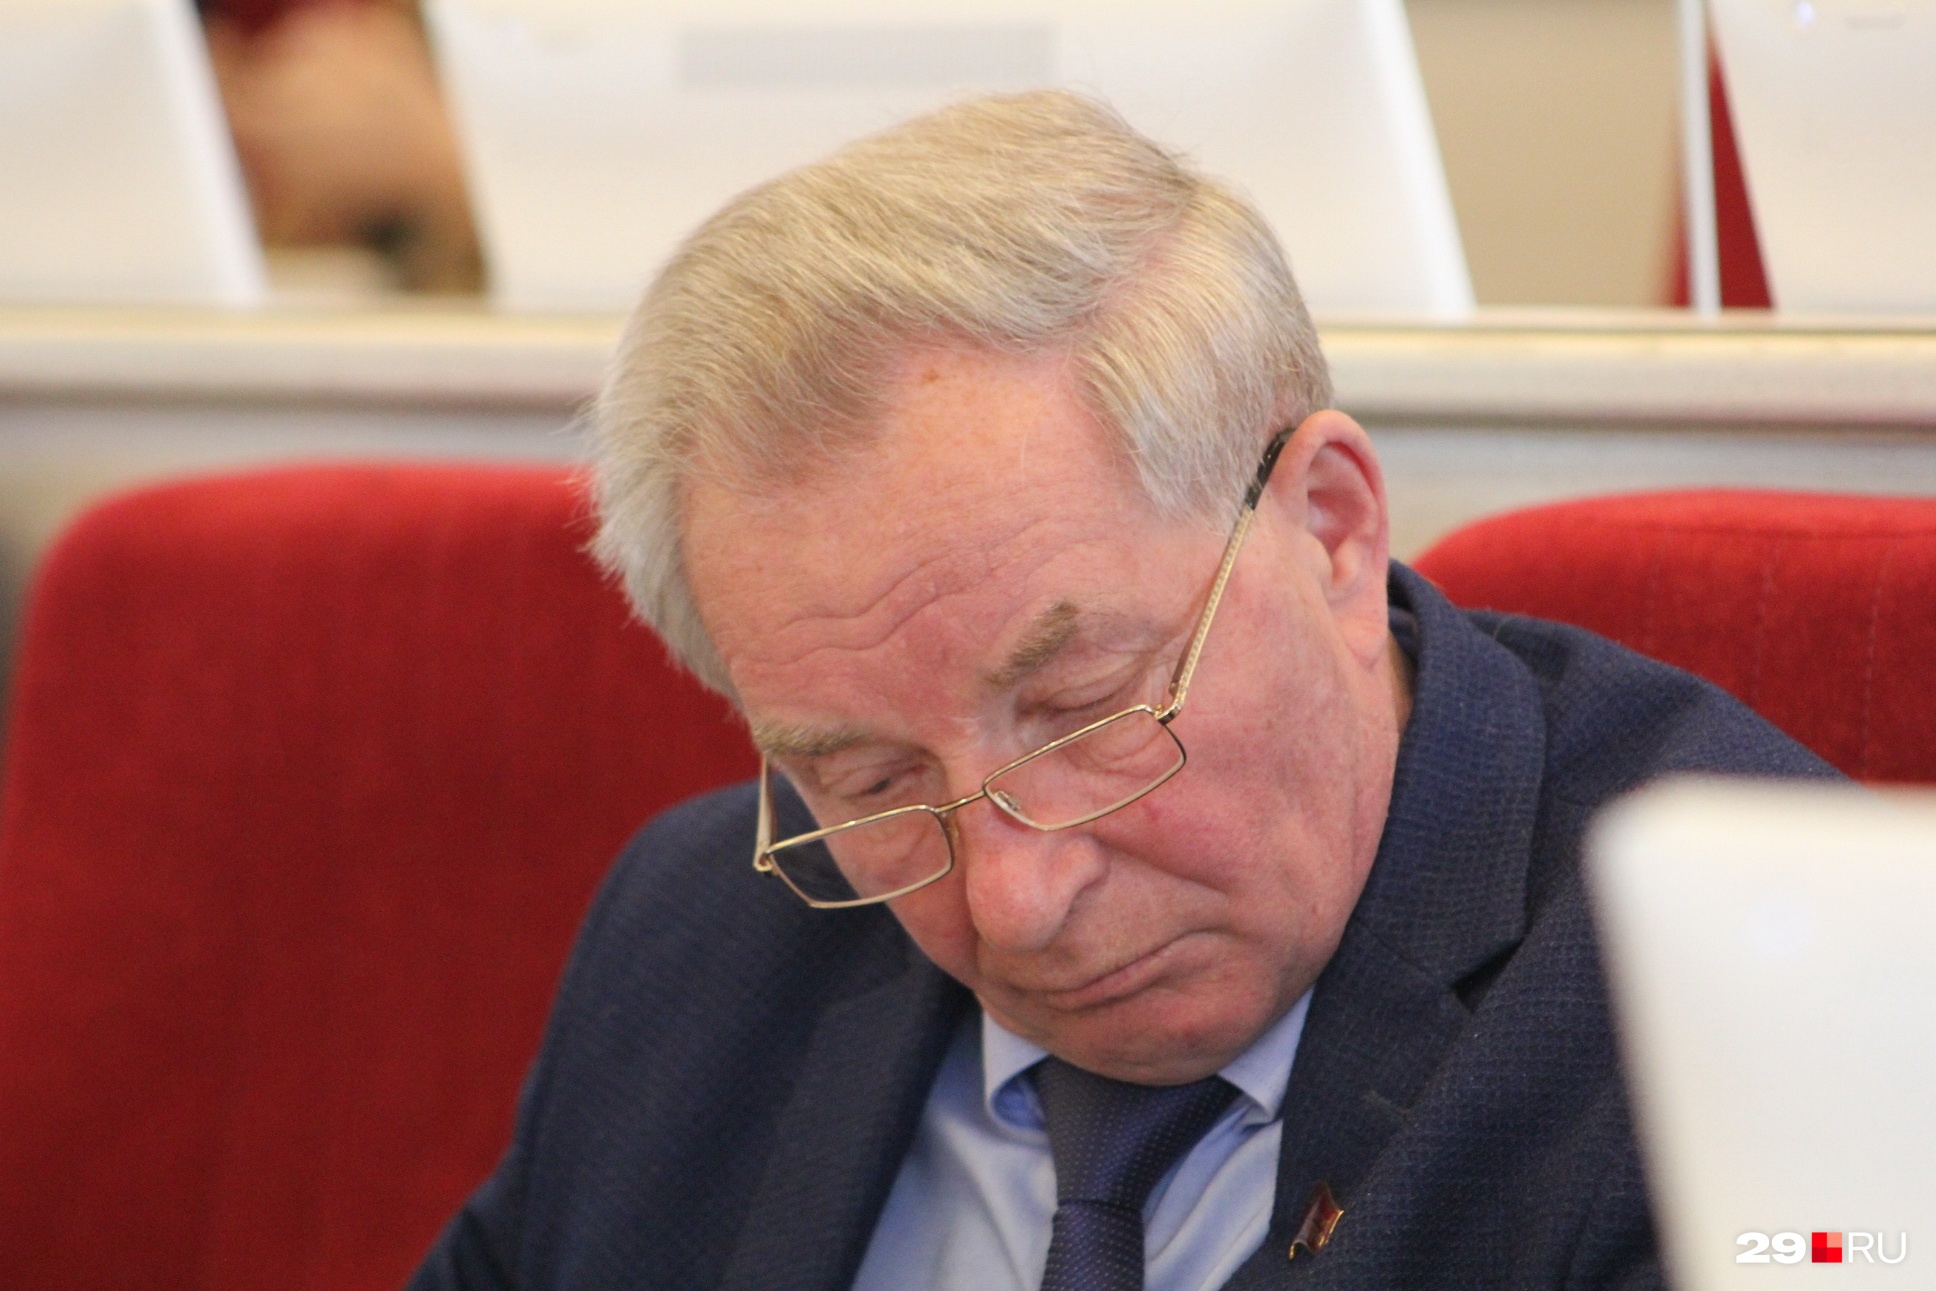 Депутат Архангельского областного собрания от КПРФ Александр Новиков высказался об отставке губернатора